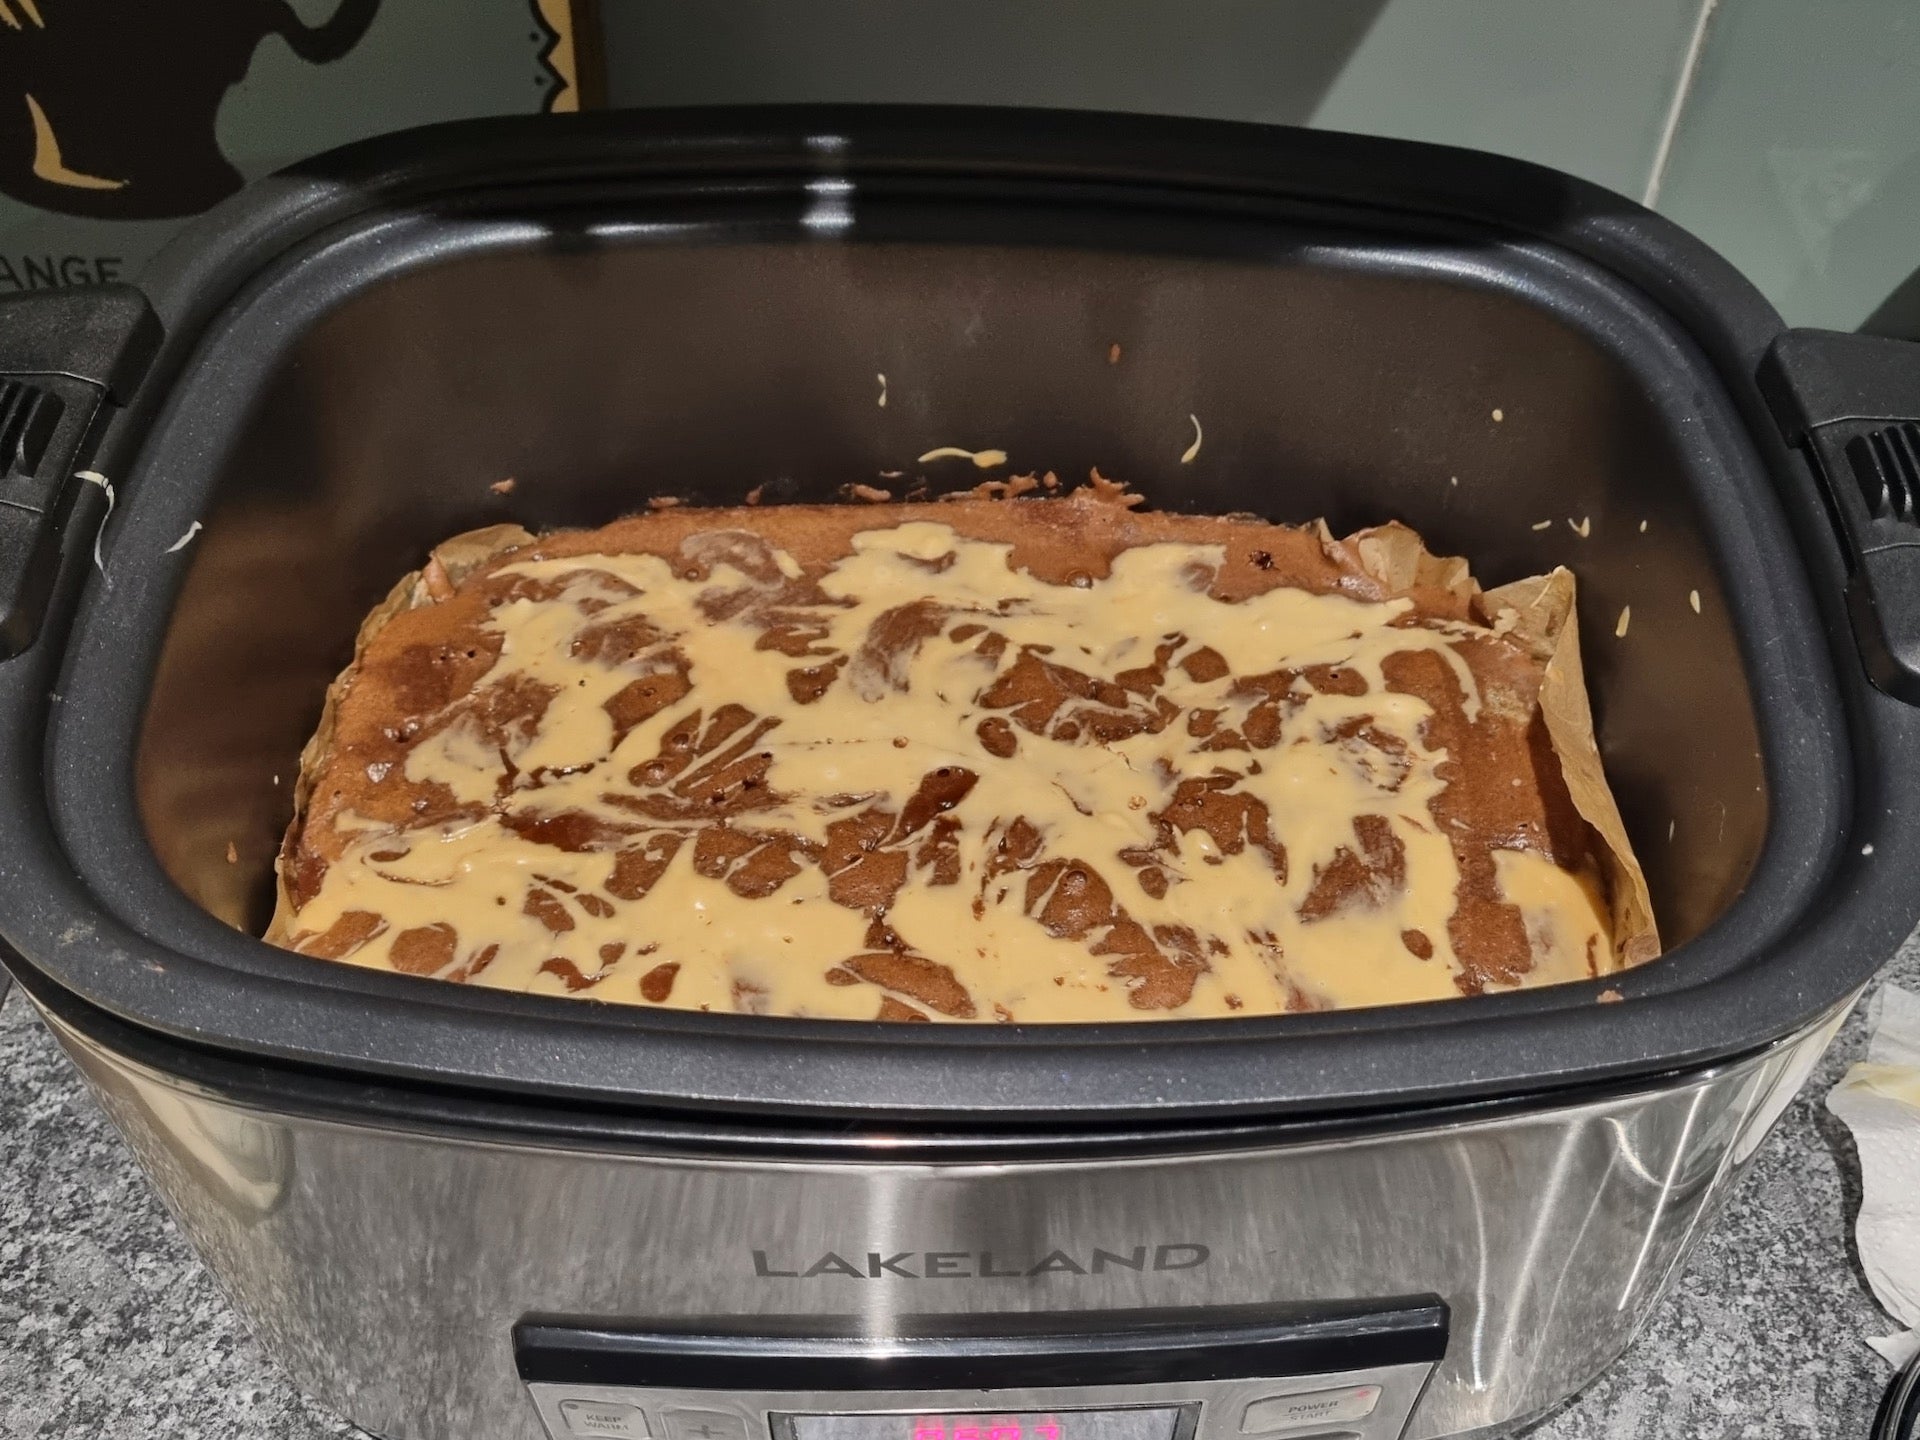 Lakeland 6.5L Searing Slow Cooker brownie